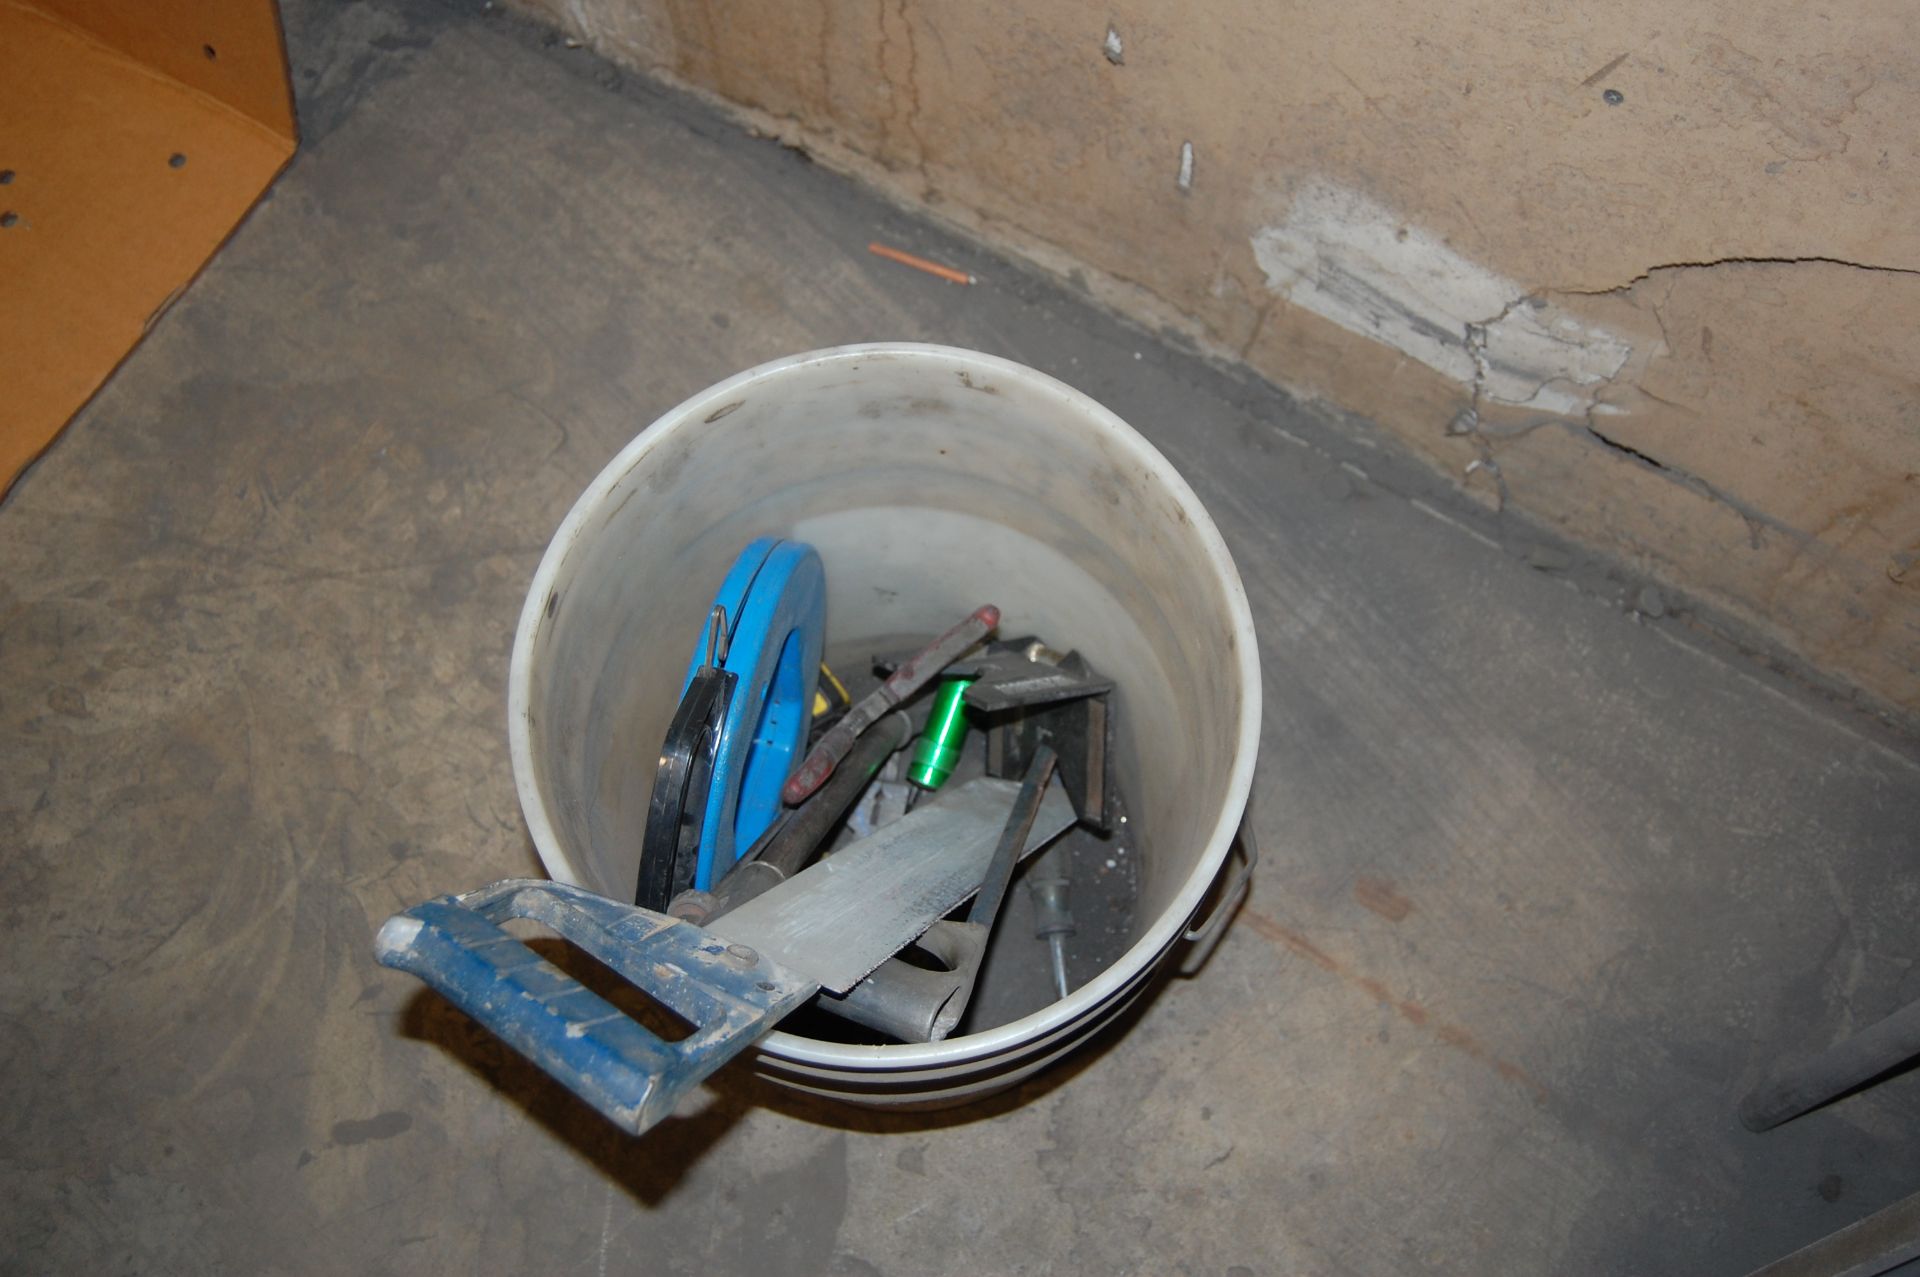 Bucket of assorted hand tools